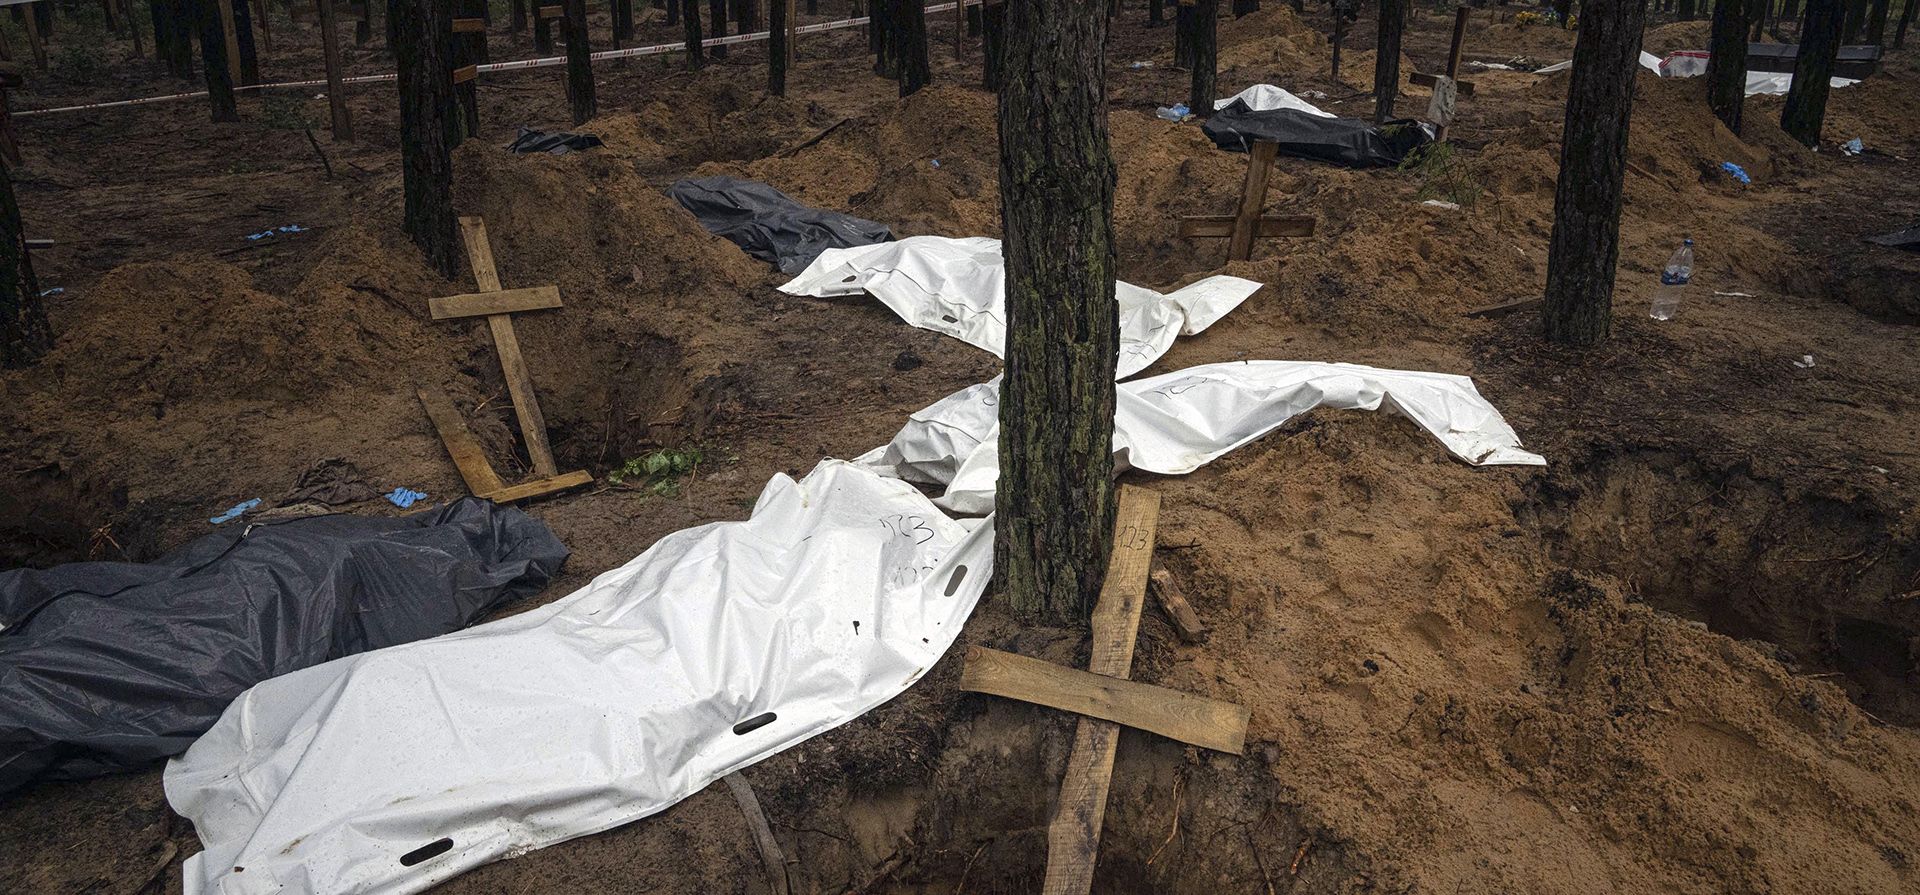 Bolsas con cadáveres se ven durante la exhumación en el área recientemente recuperada de Izium, Ucrania, el viernes 23 de septiembre de 2022. Las autoridades ucranianas descubrieron un sitio de entierro masivo cerca de la ciudad recuperada de Izium que contenía cientos de tumbas. 